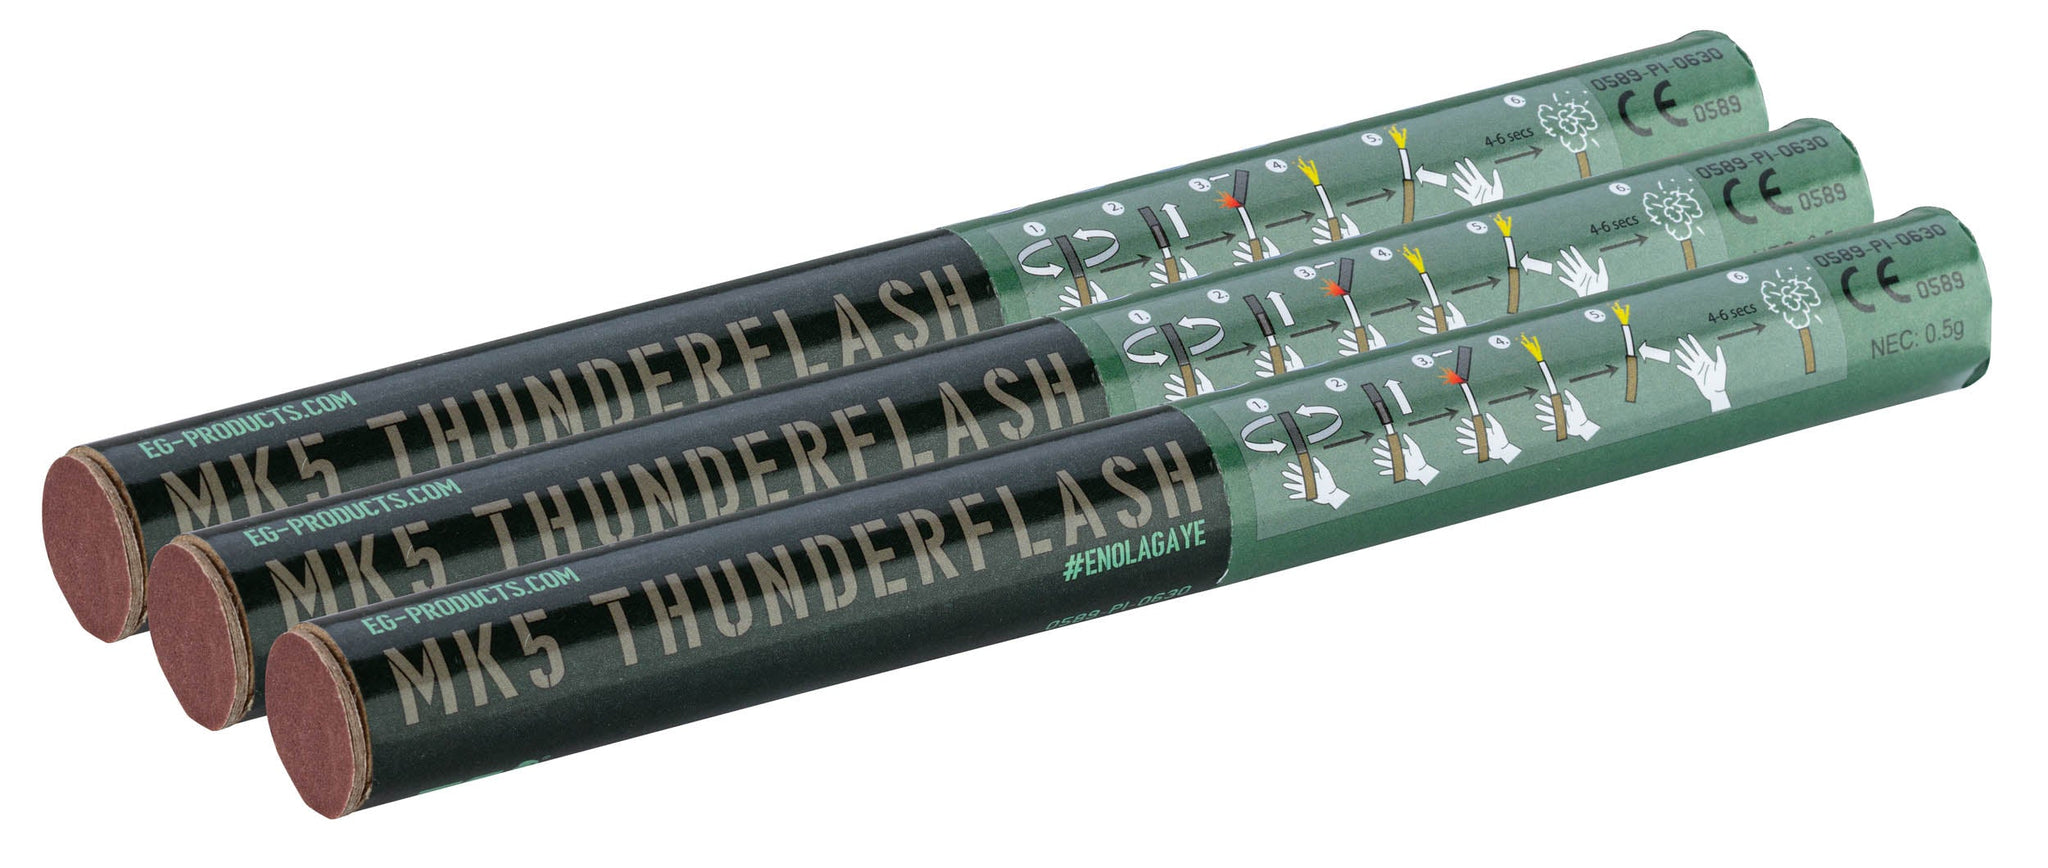 Enola Gaye MK5 Thunderflash - Single Flash